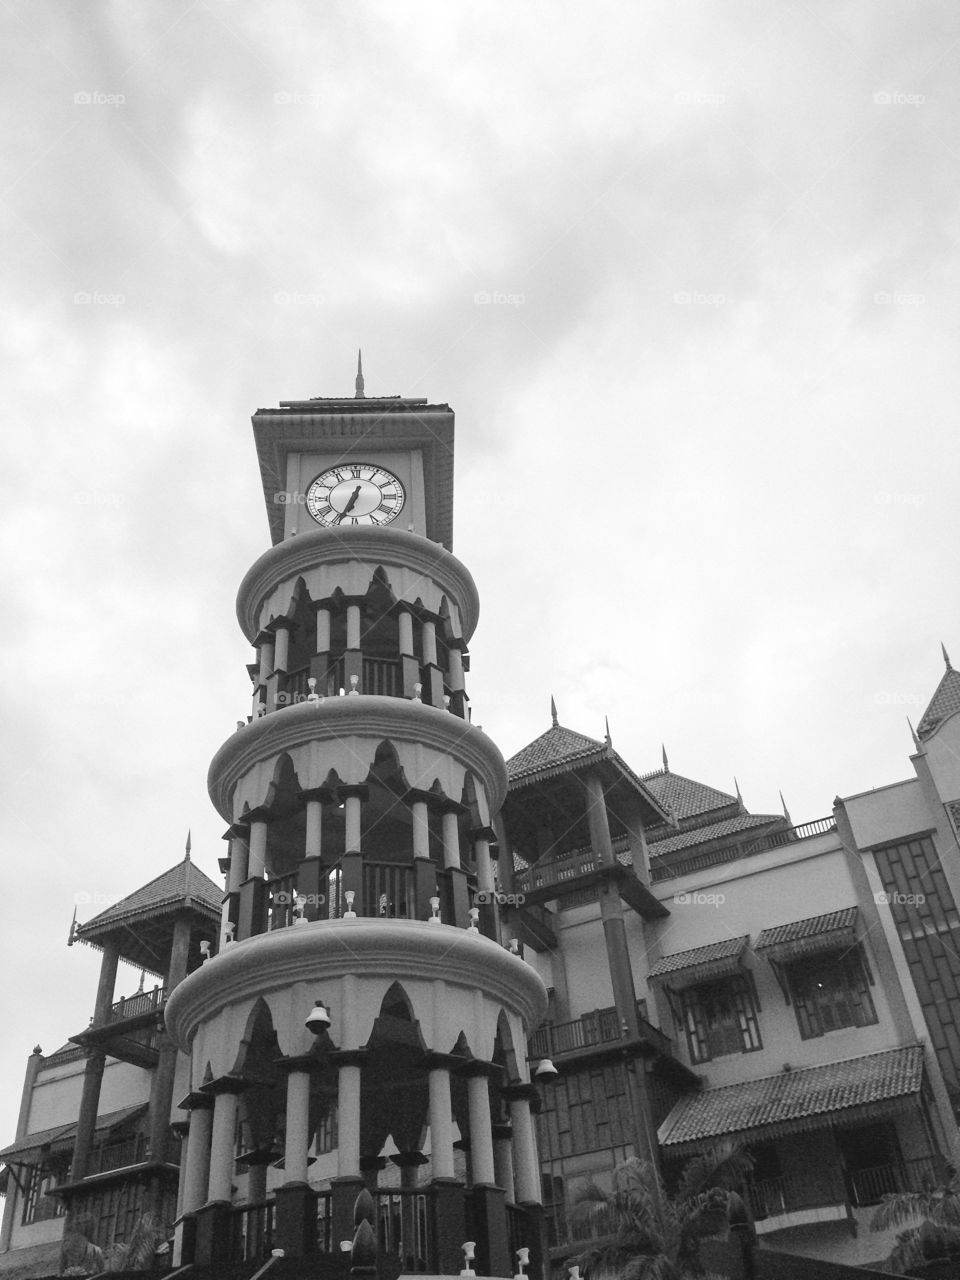 Clock. Clock tower